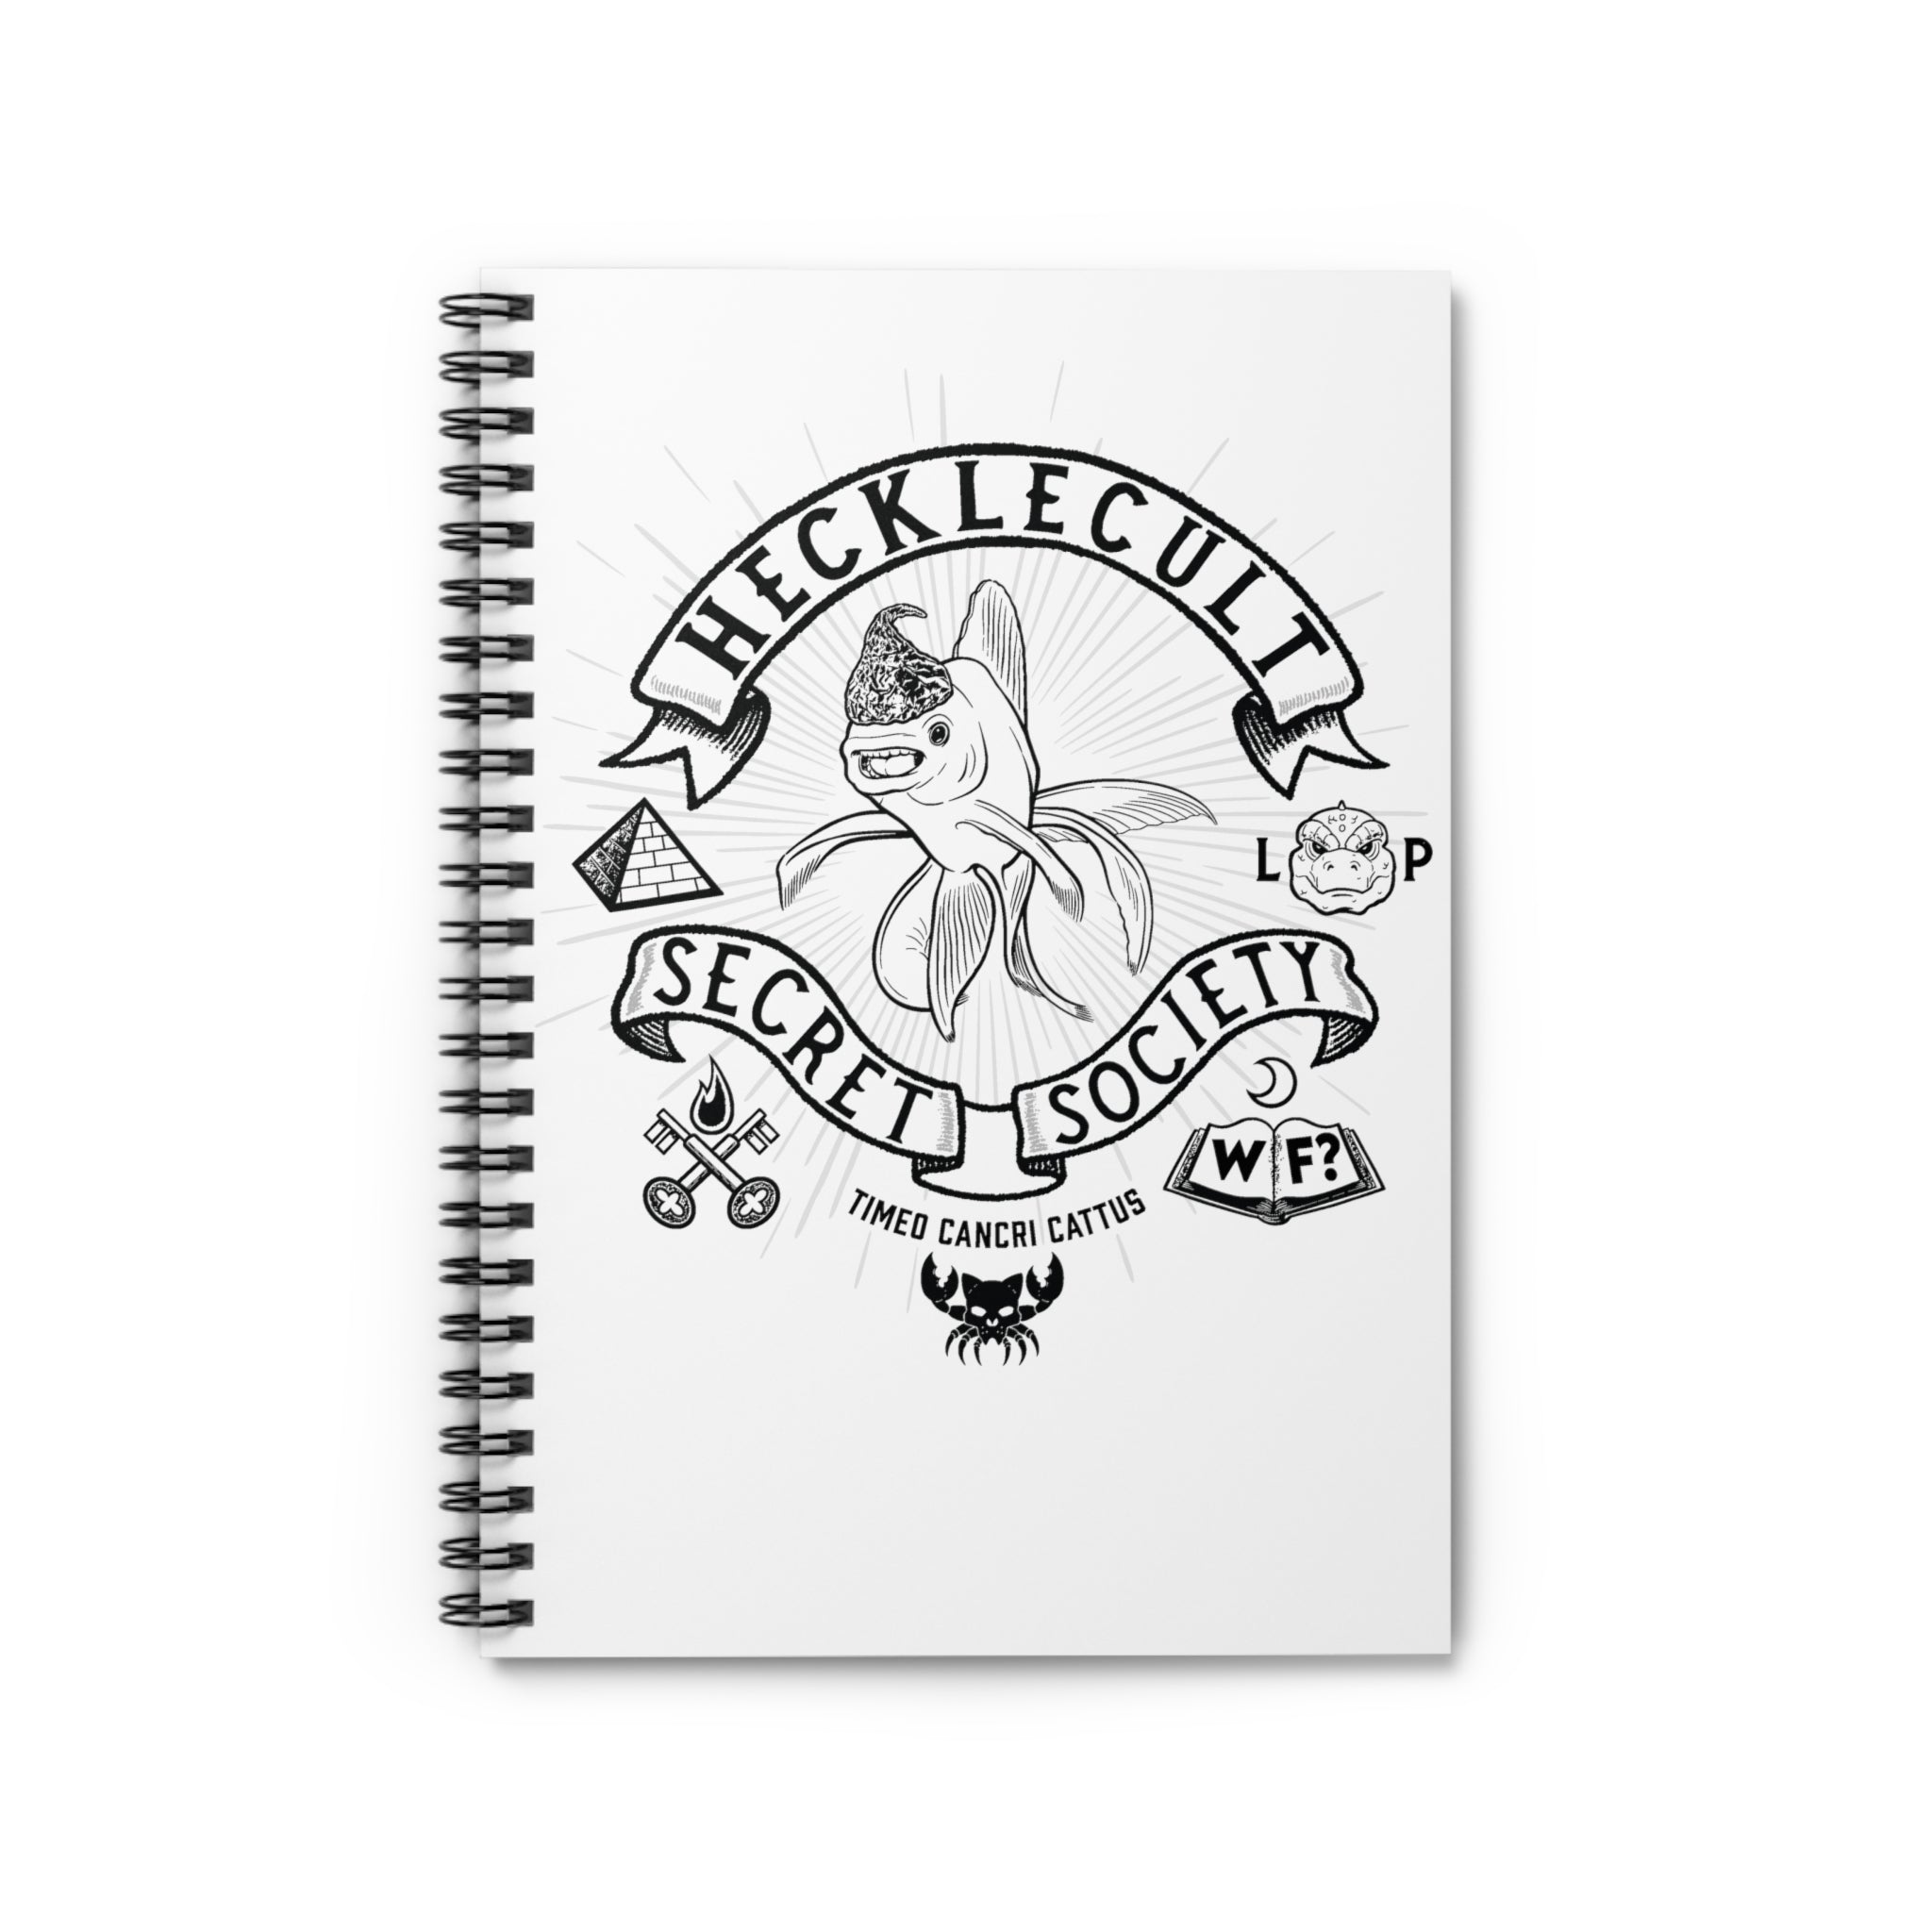 Hecklecult Spiral Notebook - Ruled Line